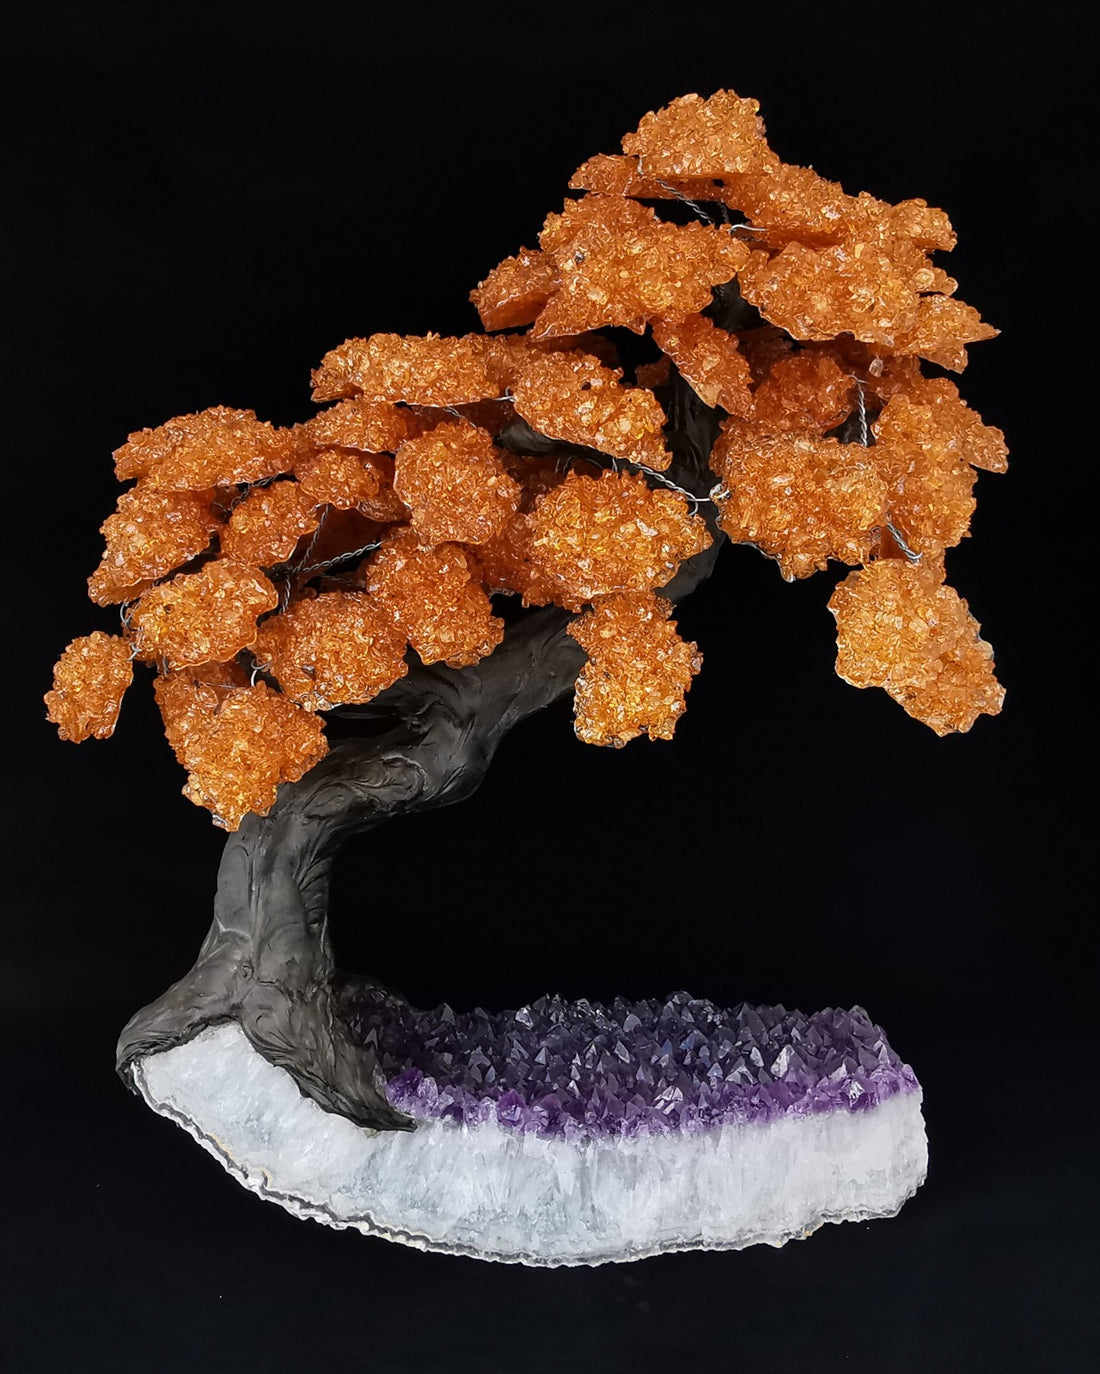 Crystal Tree size 7 - Citrine Crystal Tree on Amethyst Base - Citrin krystalltre på ametyst base